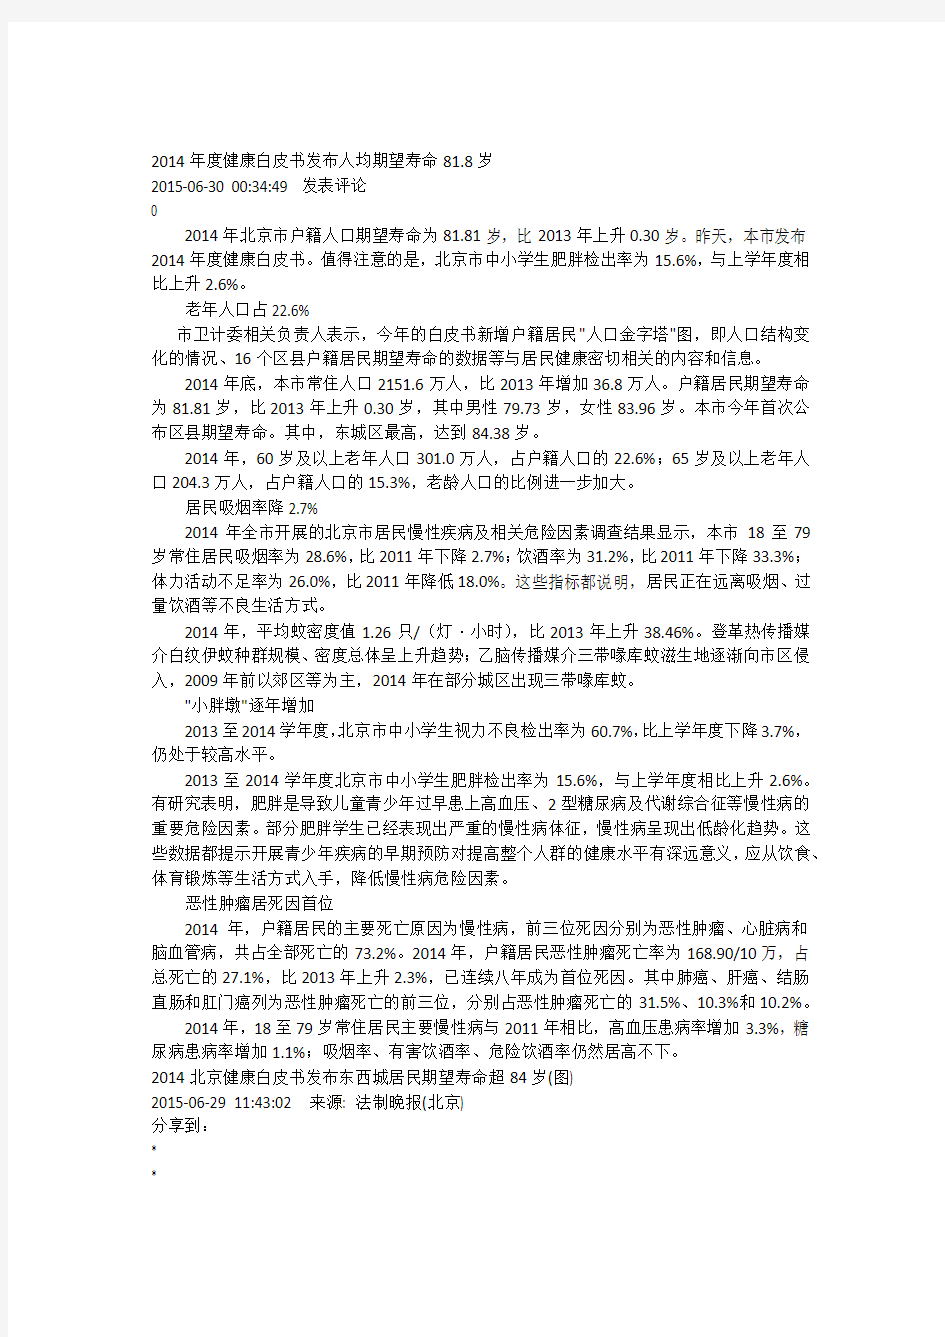 2014北京健康白皮书摘要(新华网)